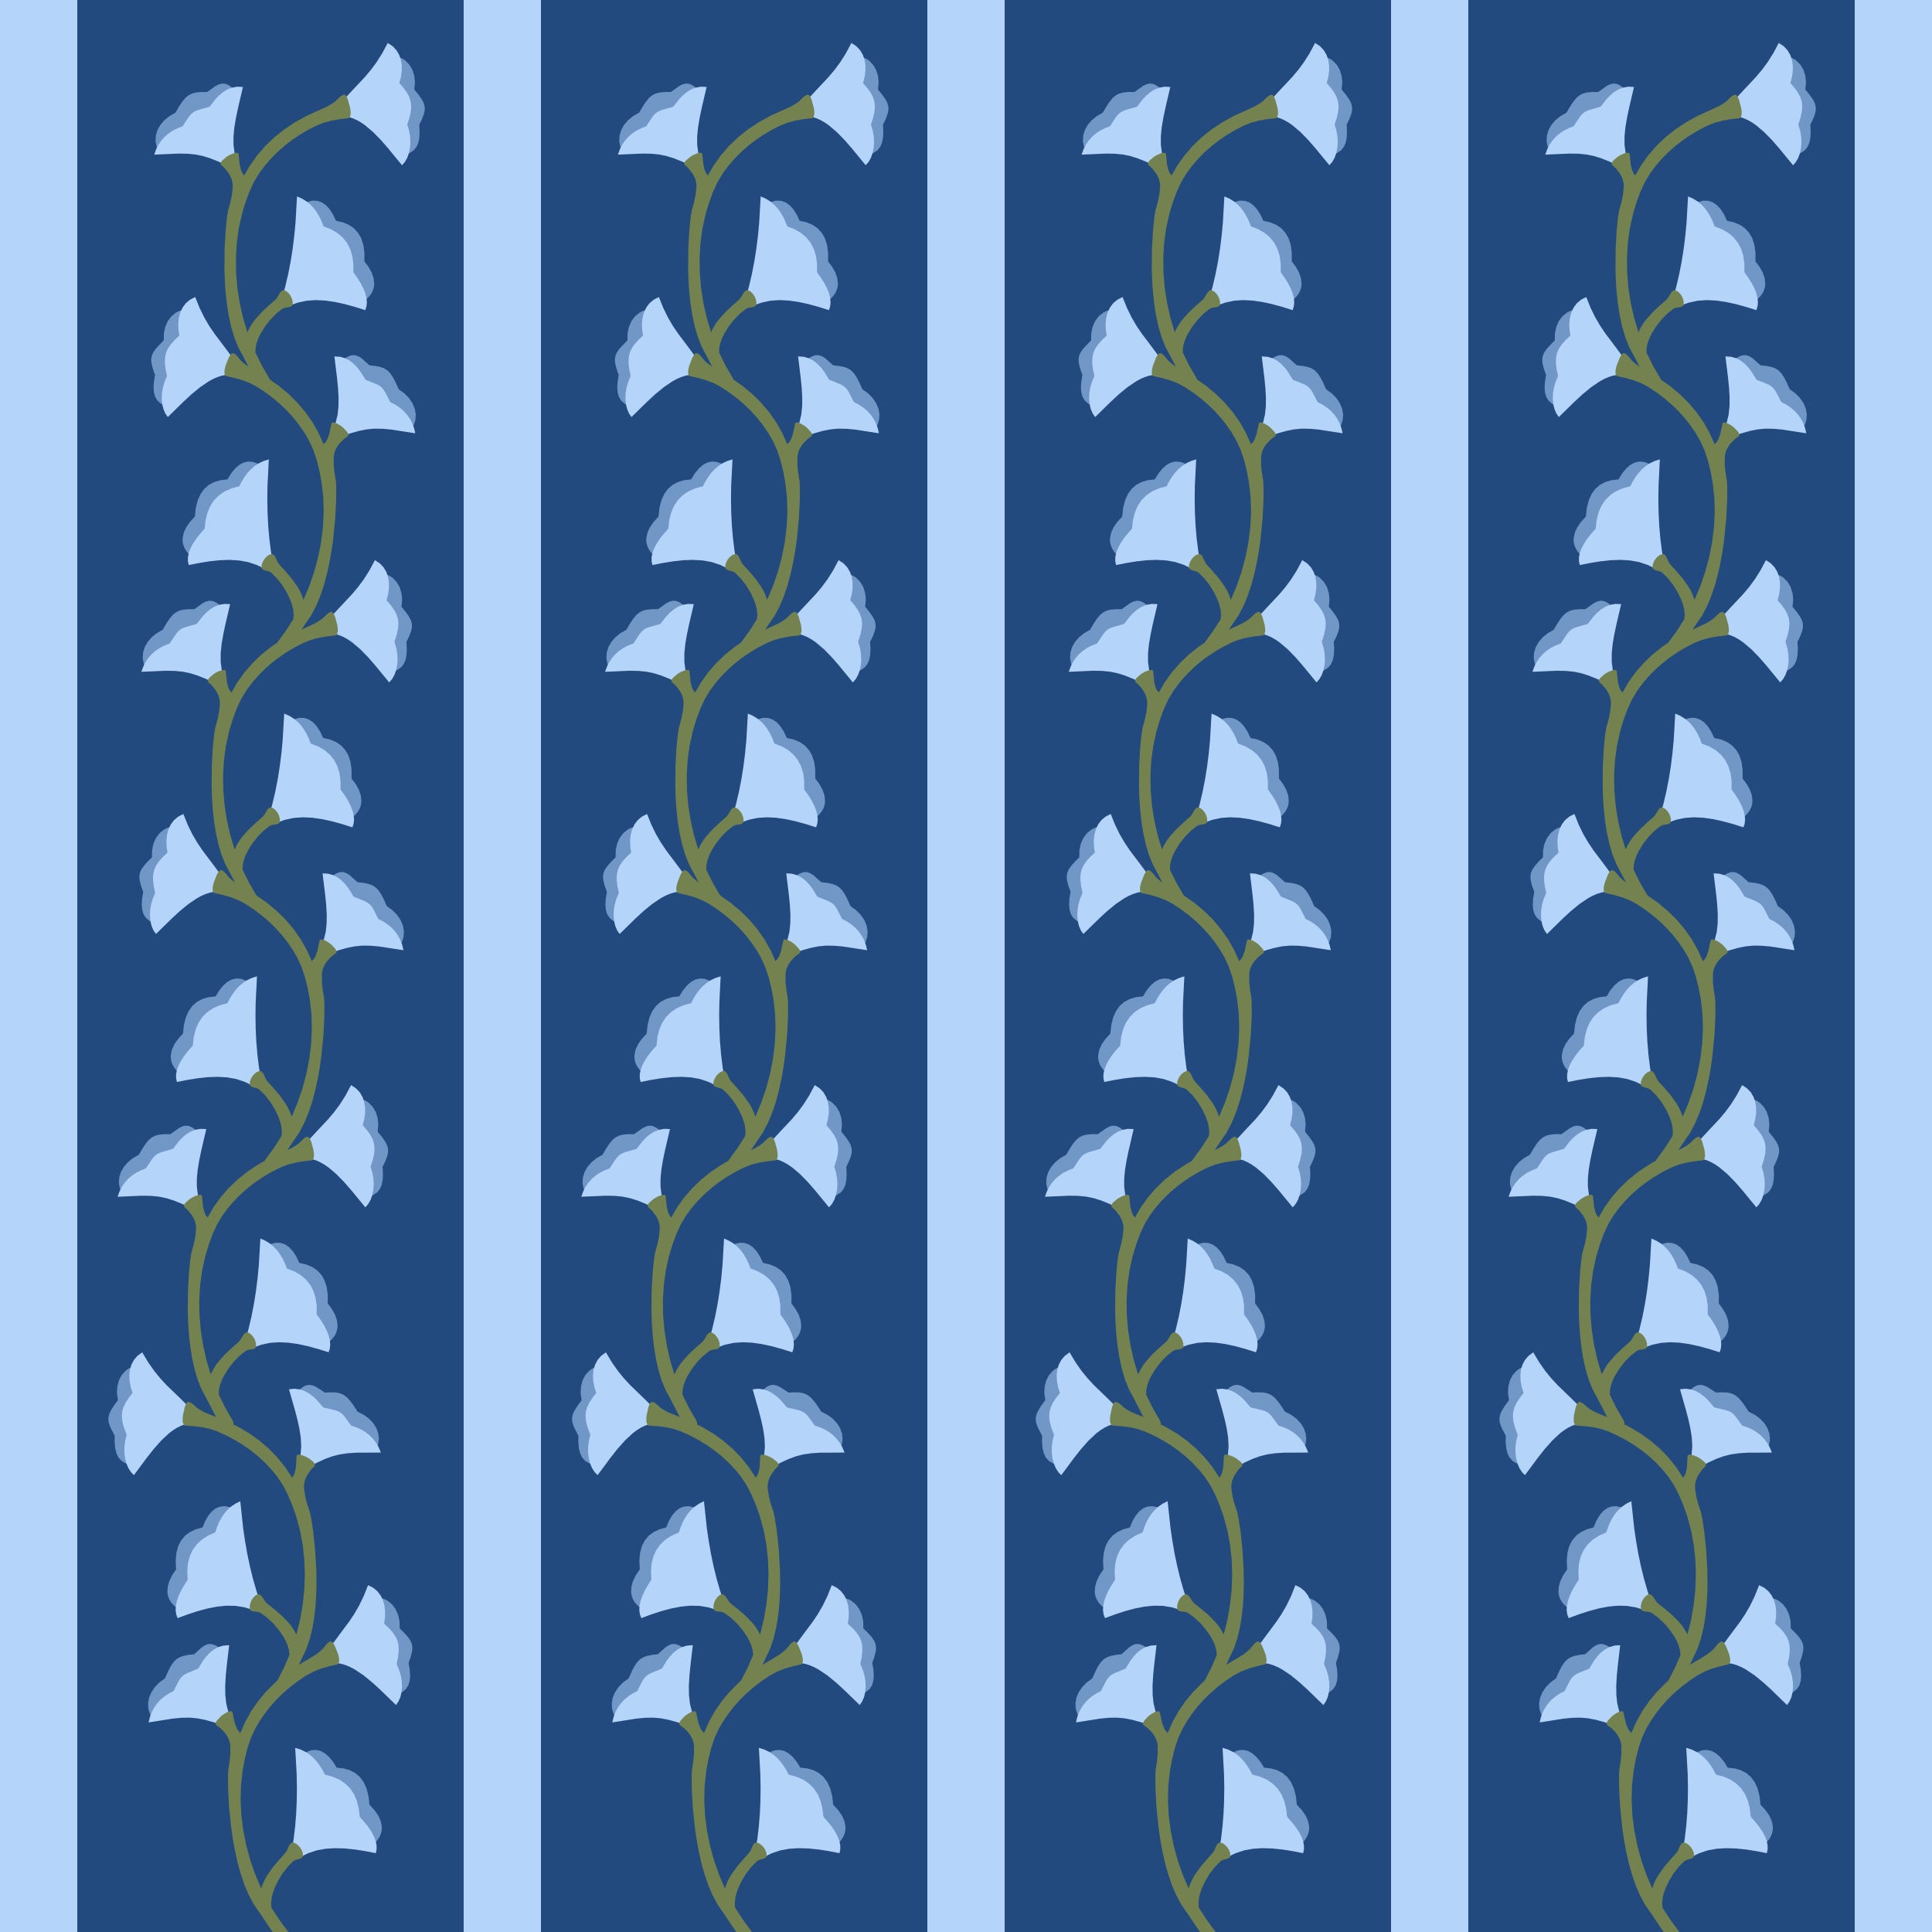 Wild Flowers - applique quilt pattern workshop